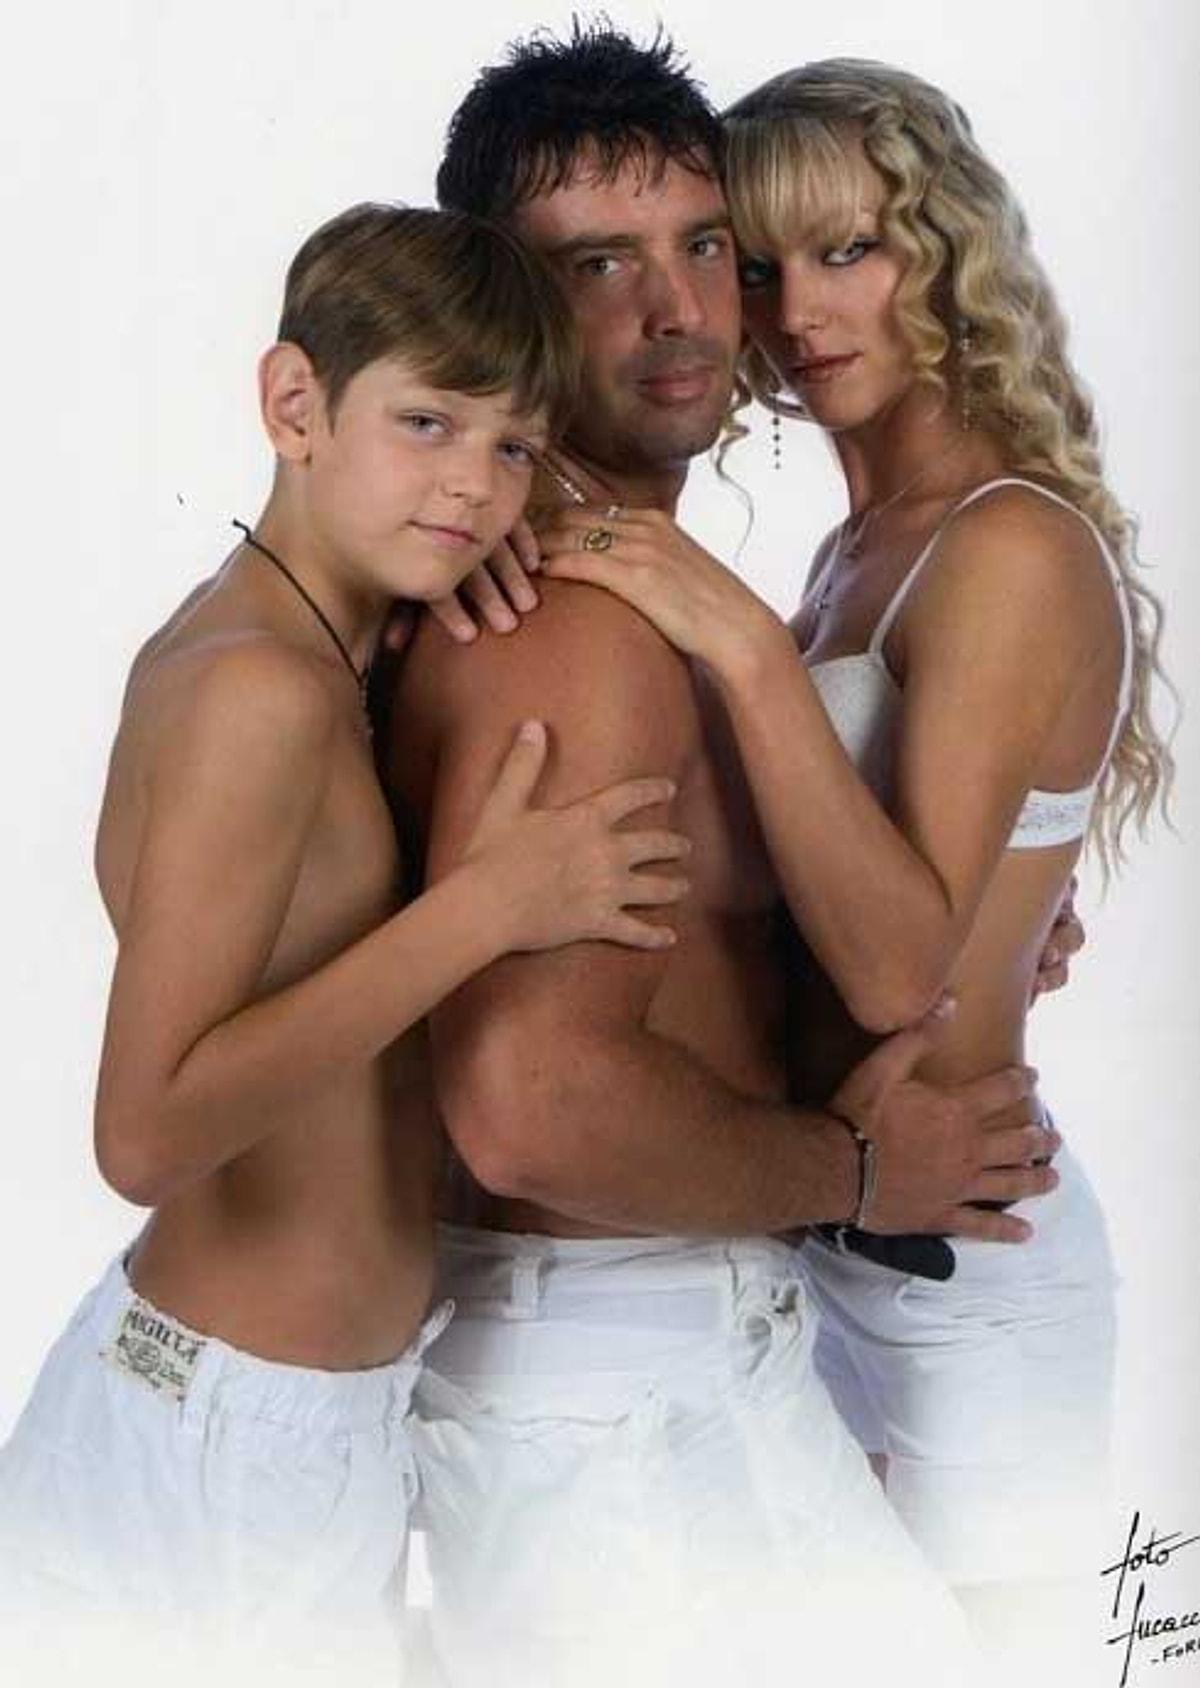 Privat family. Семейная эротическая фотосессия. Обнаженность в семье. Эротическая фотосессия всей семьей.